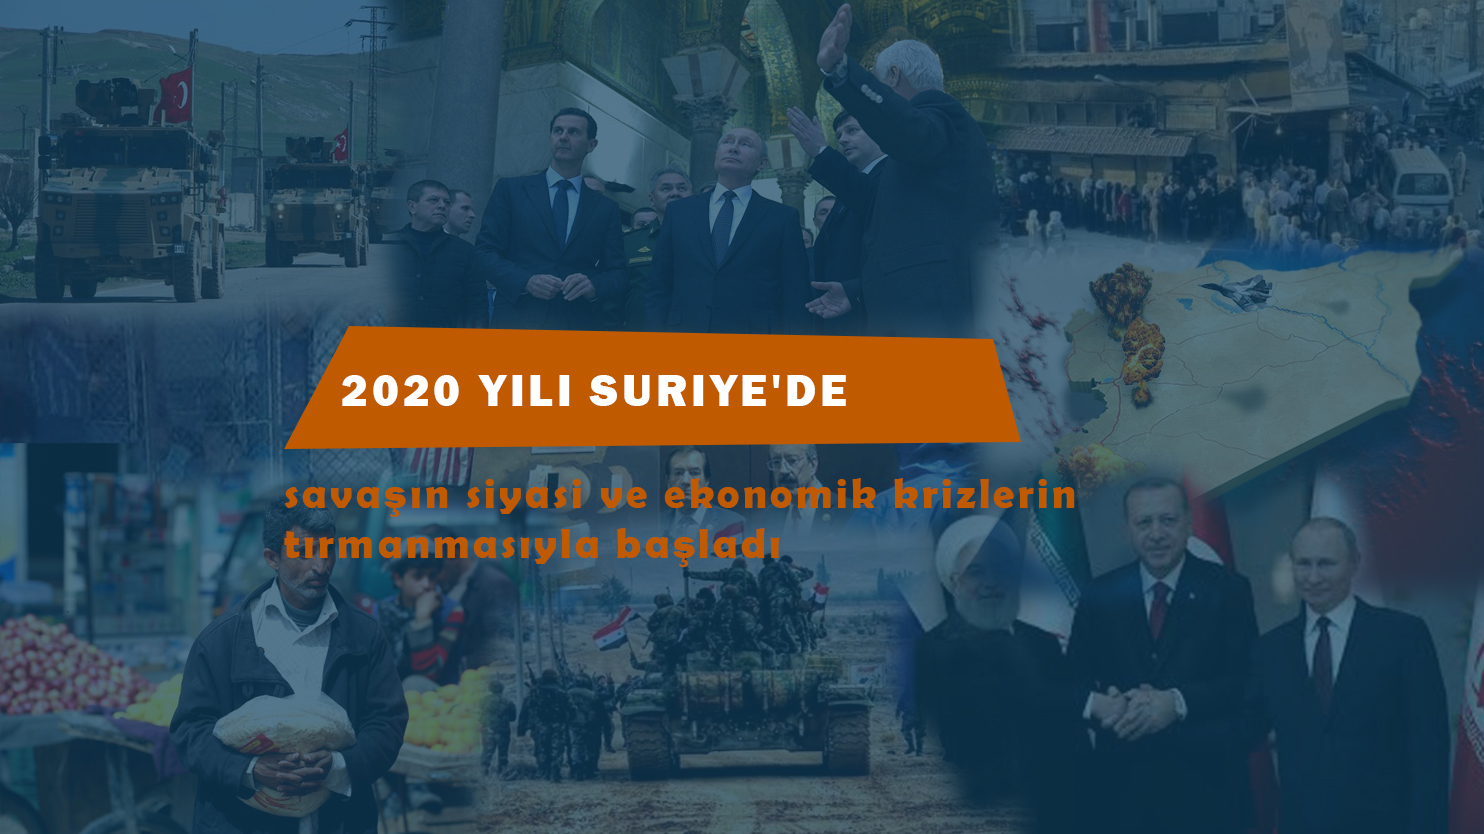 2020 Suriye panoraması: Siyasi ve ekonomik kriz derinleşerek devam etti